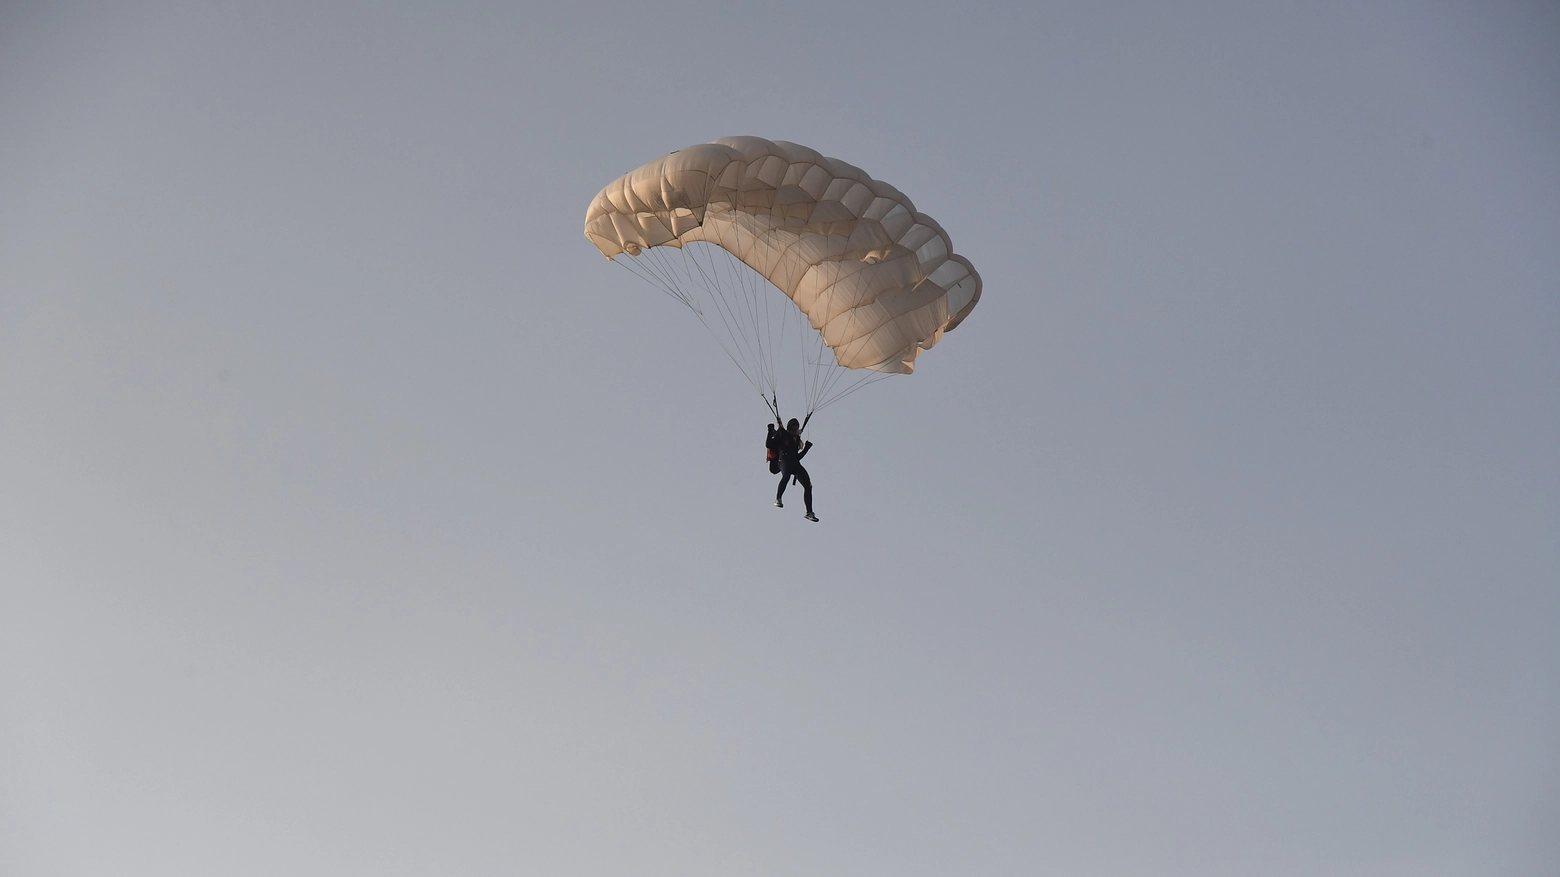 Paracadutista in volo